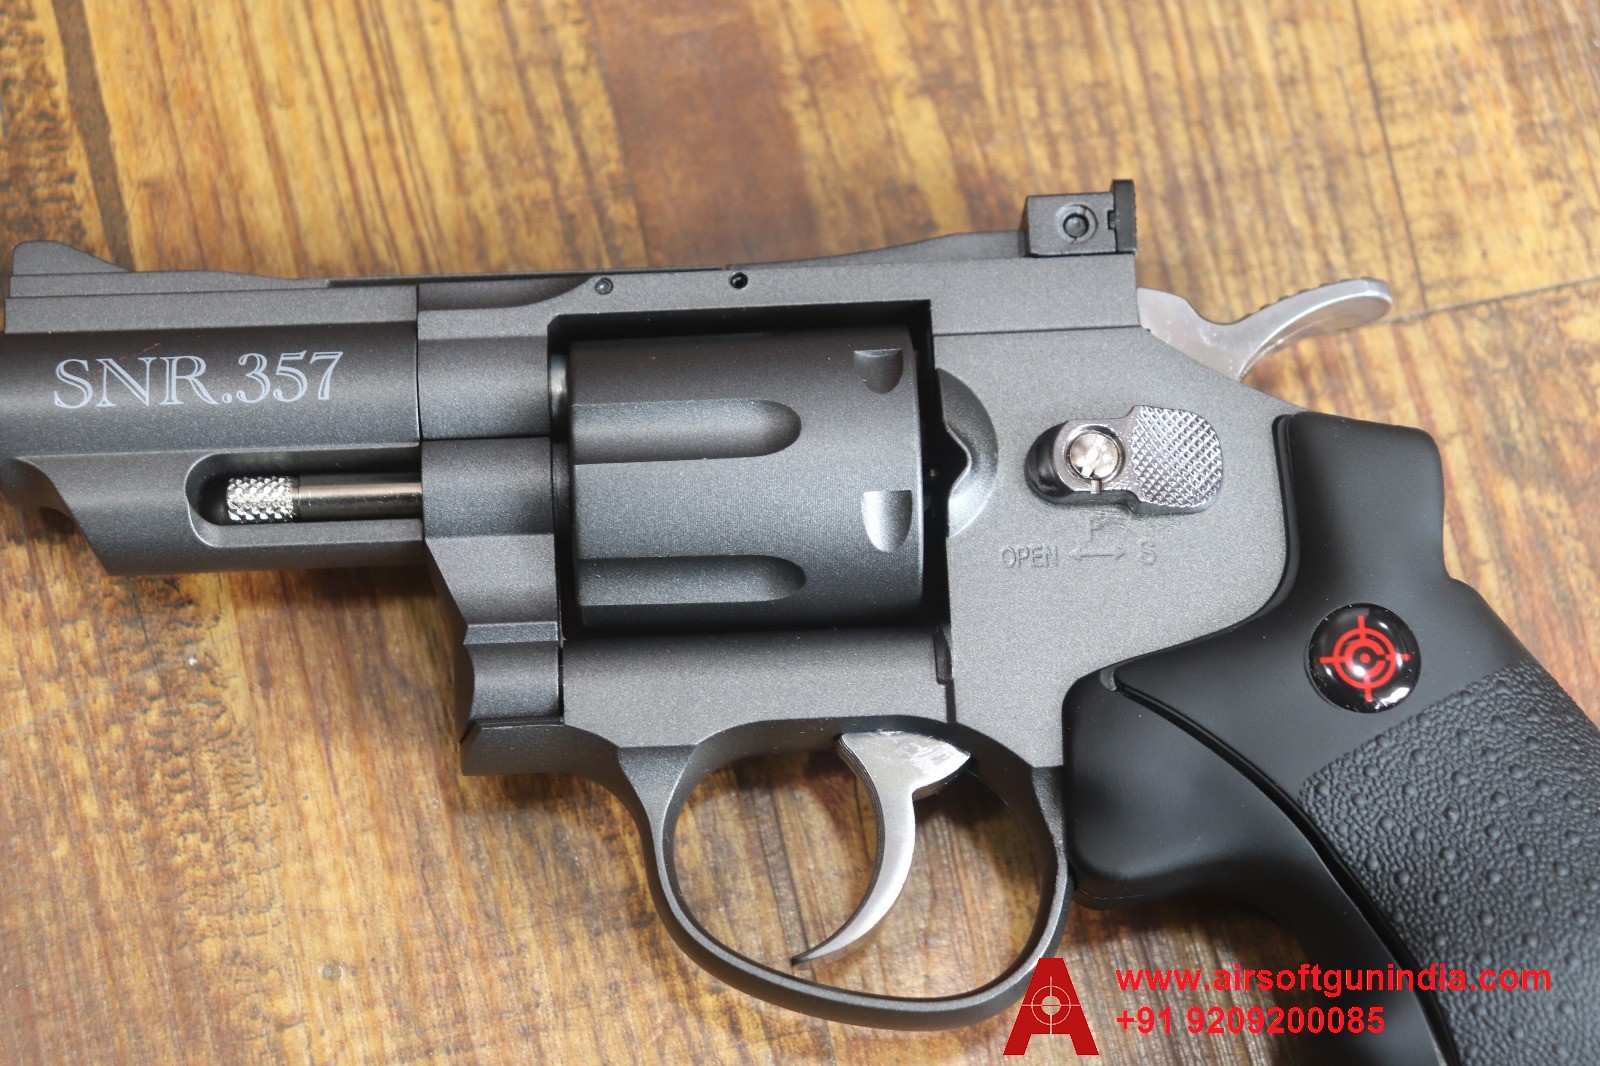 Crossman SNR 357 Pellet And BB .177Cal, 4.5mm Air Revolver By Airsoft Gun India